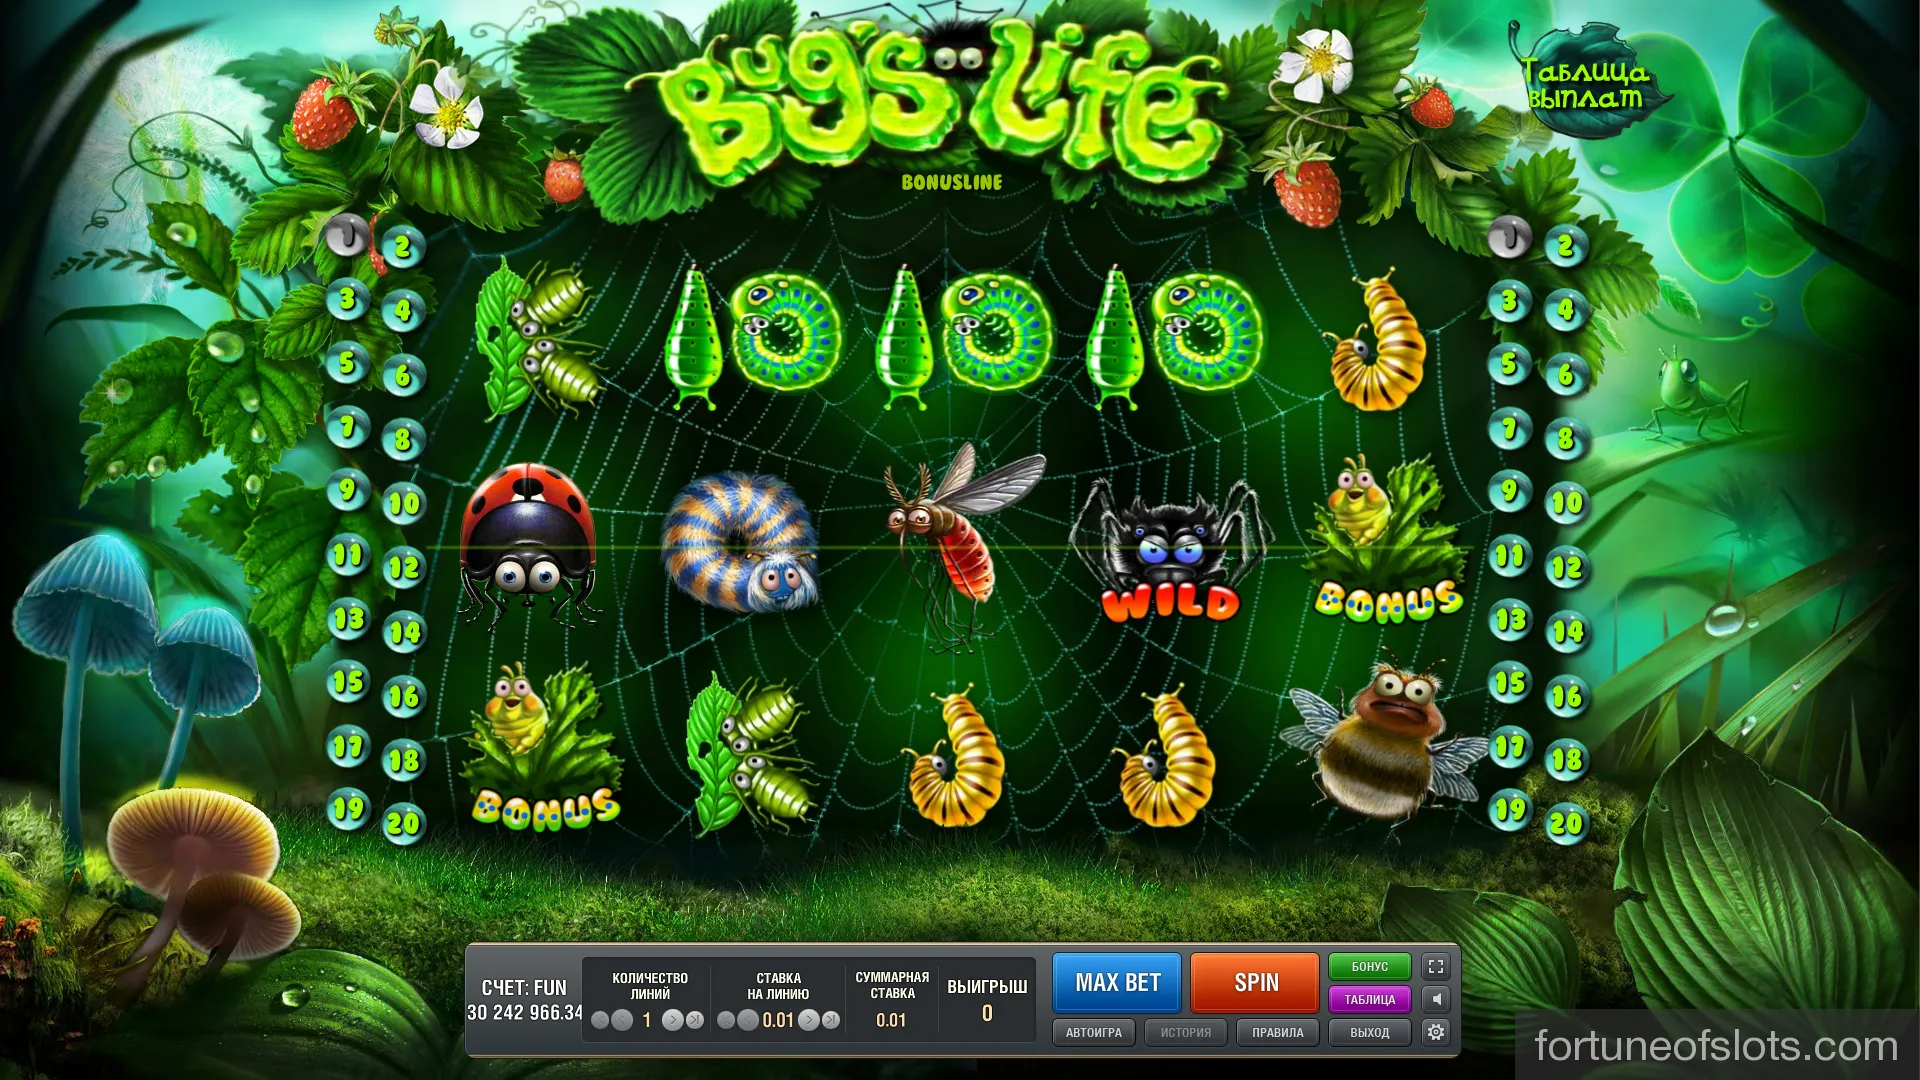 Игровые автоматы Bugs life